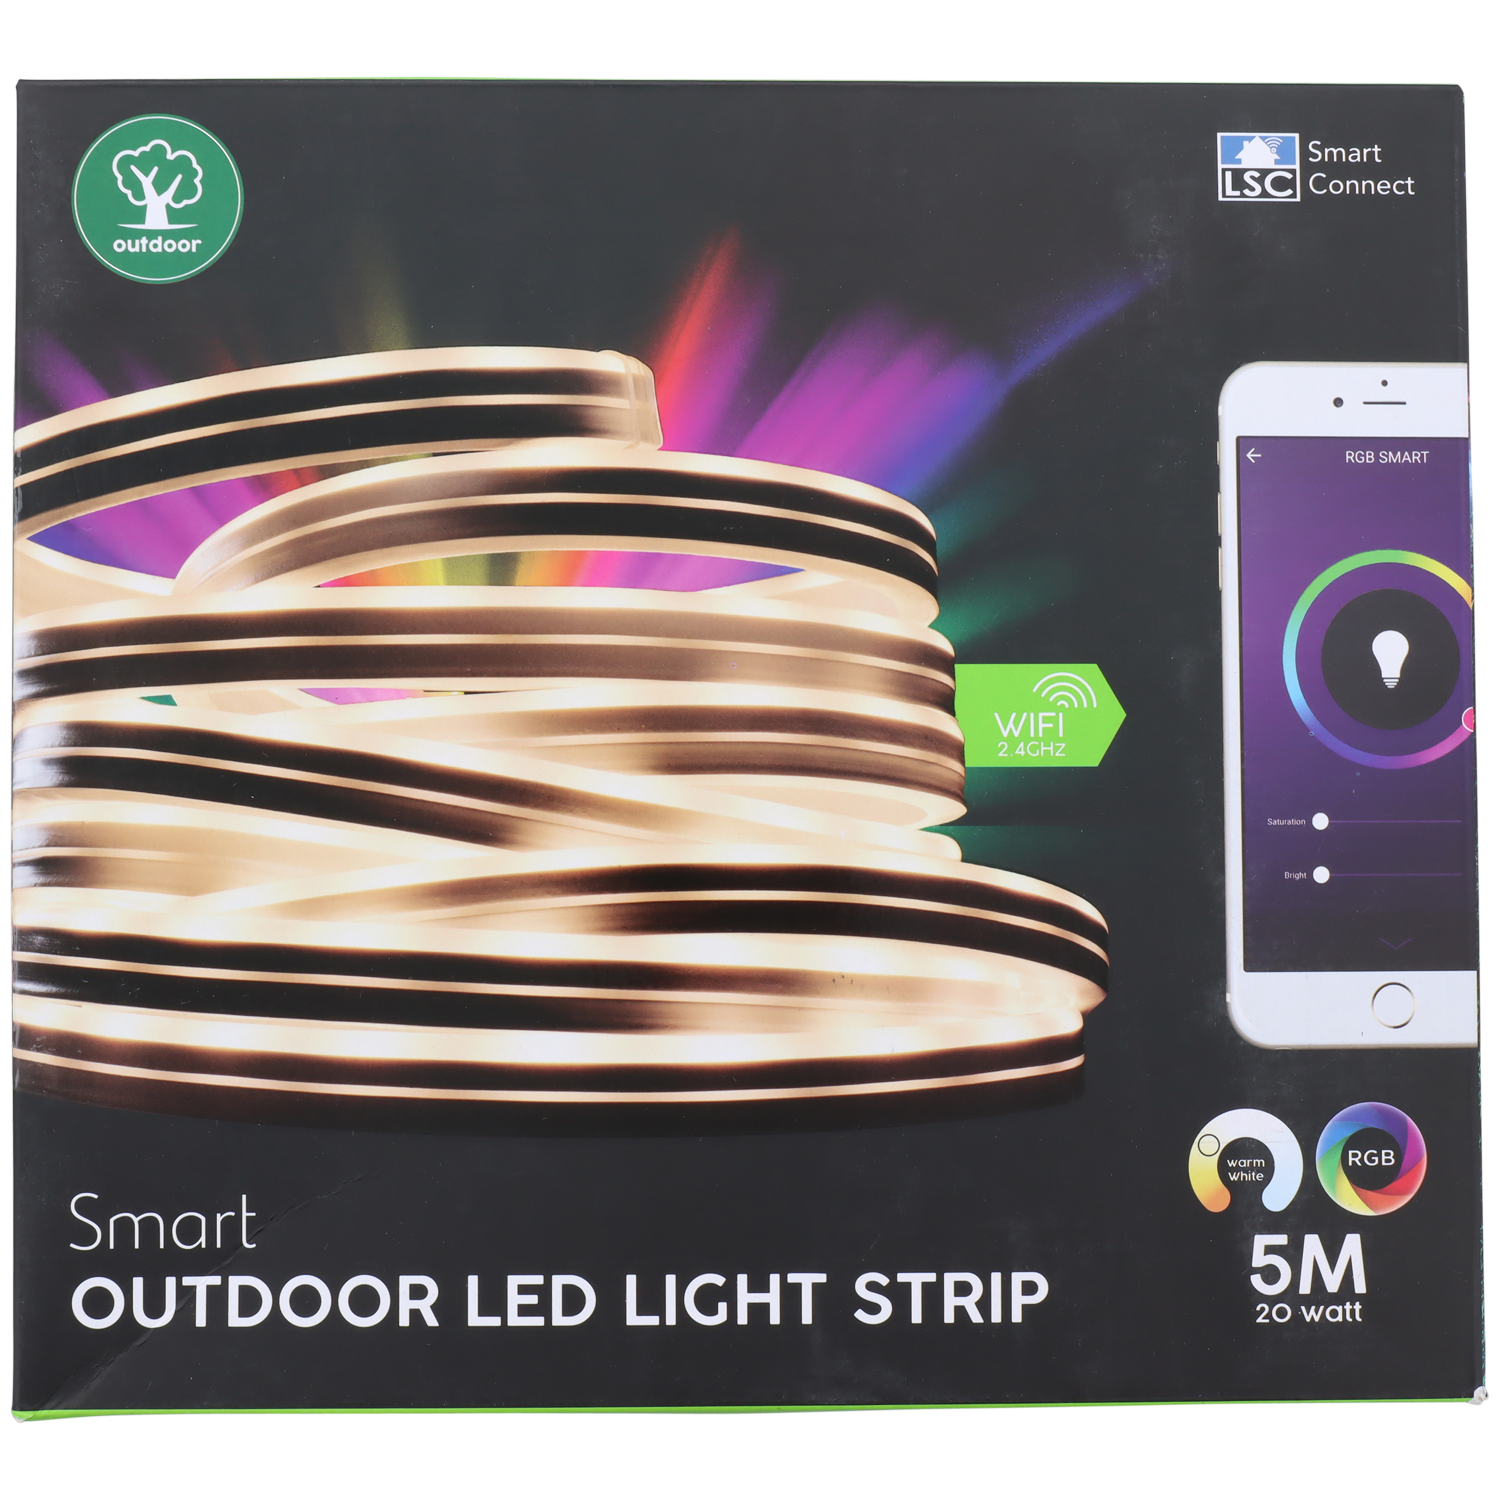 lsc smart connect neon ledstrip action com